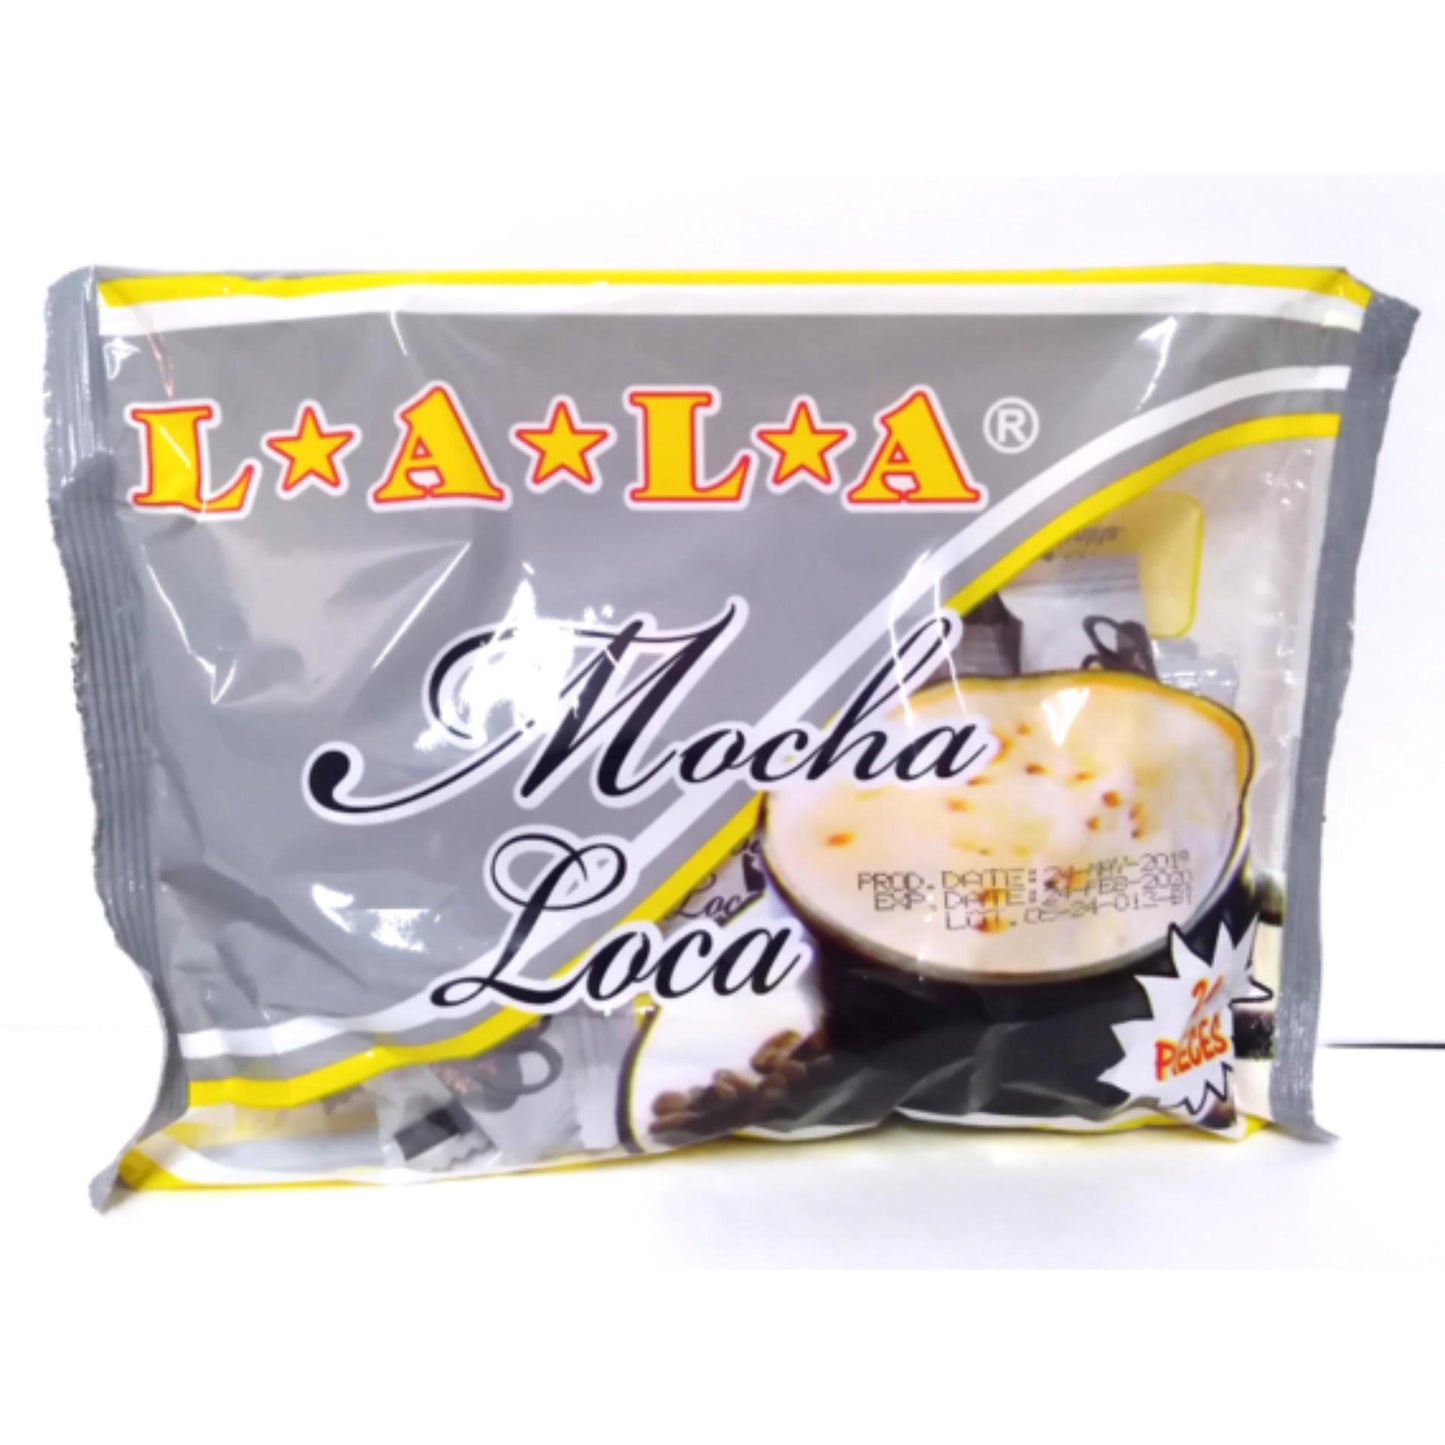 LALA Mocha Loca | 24 pcs